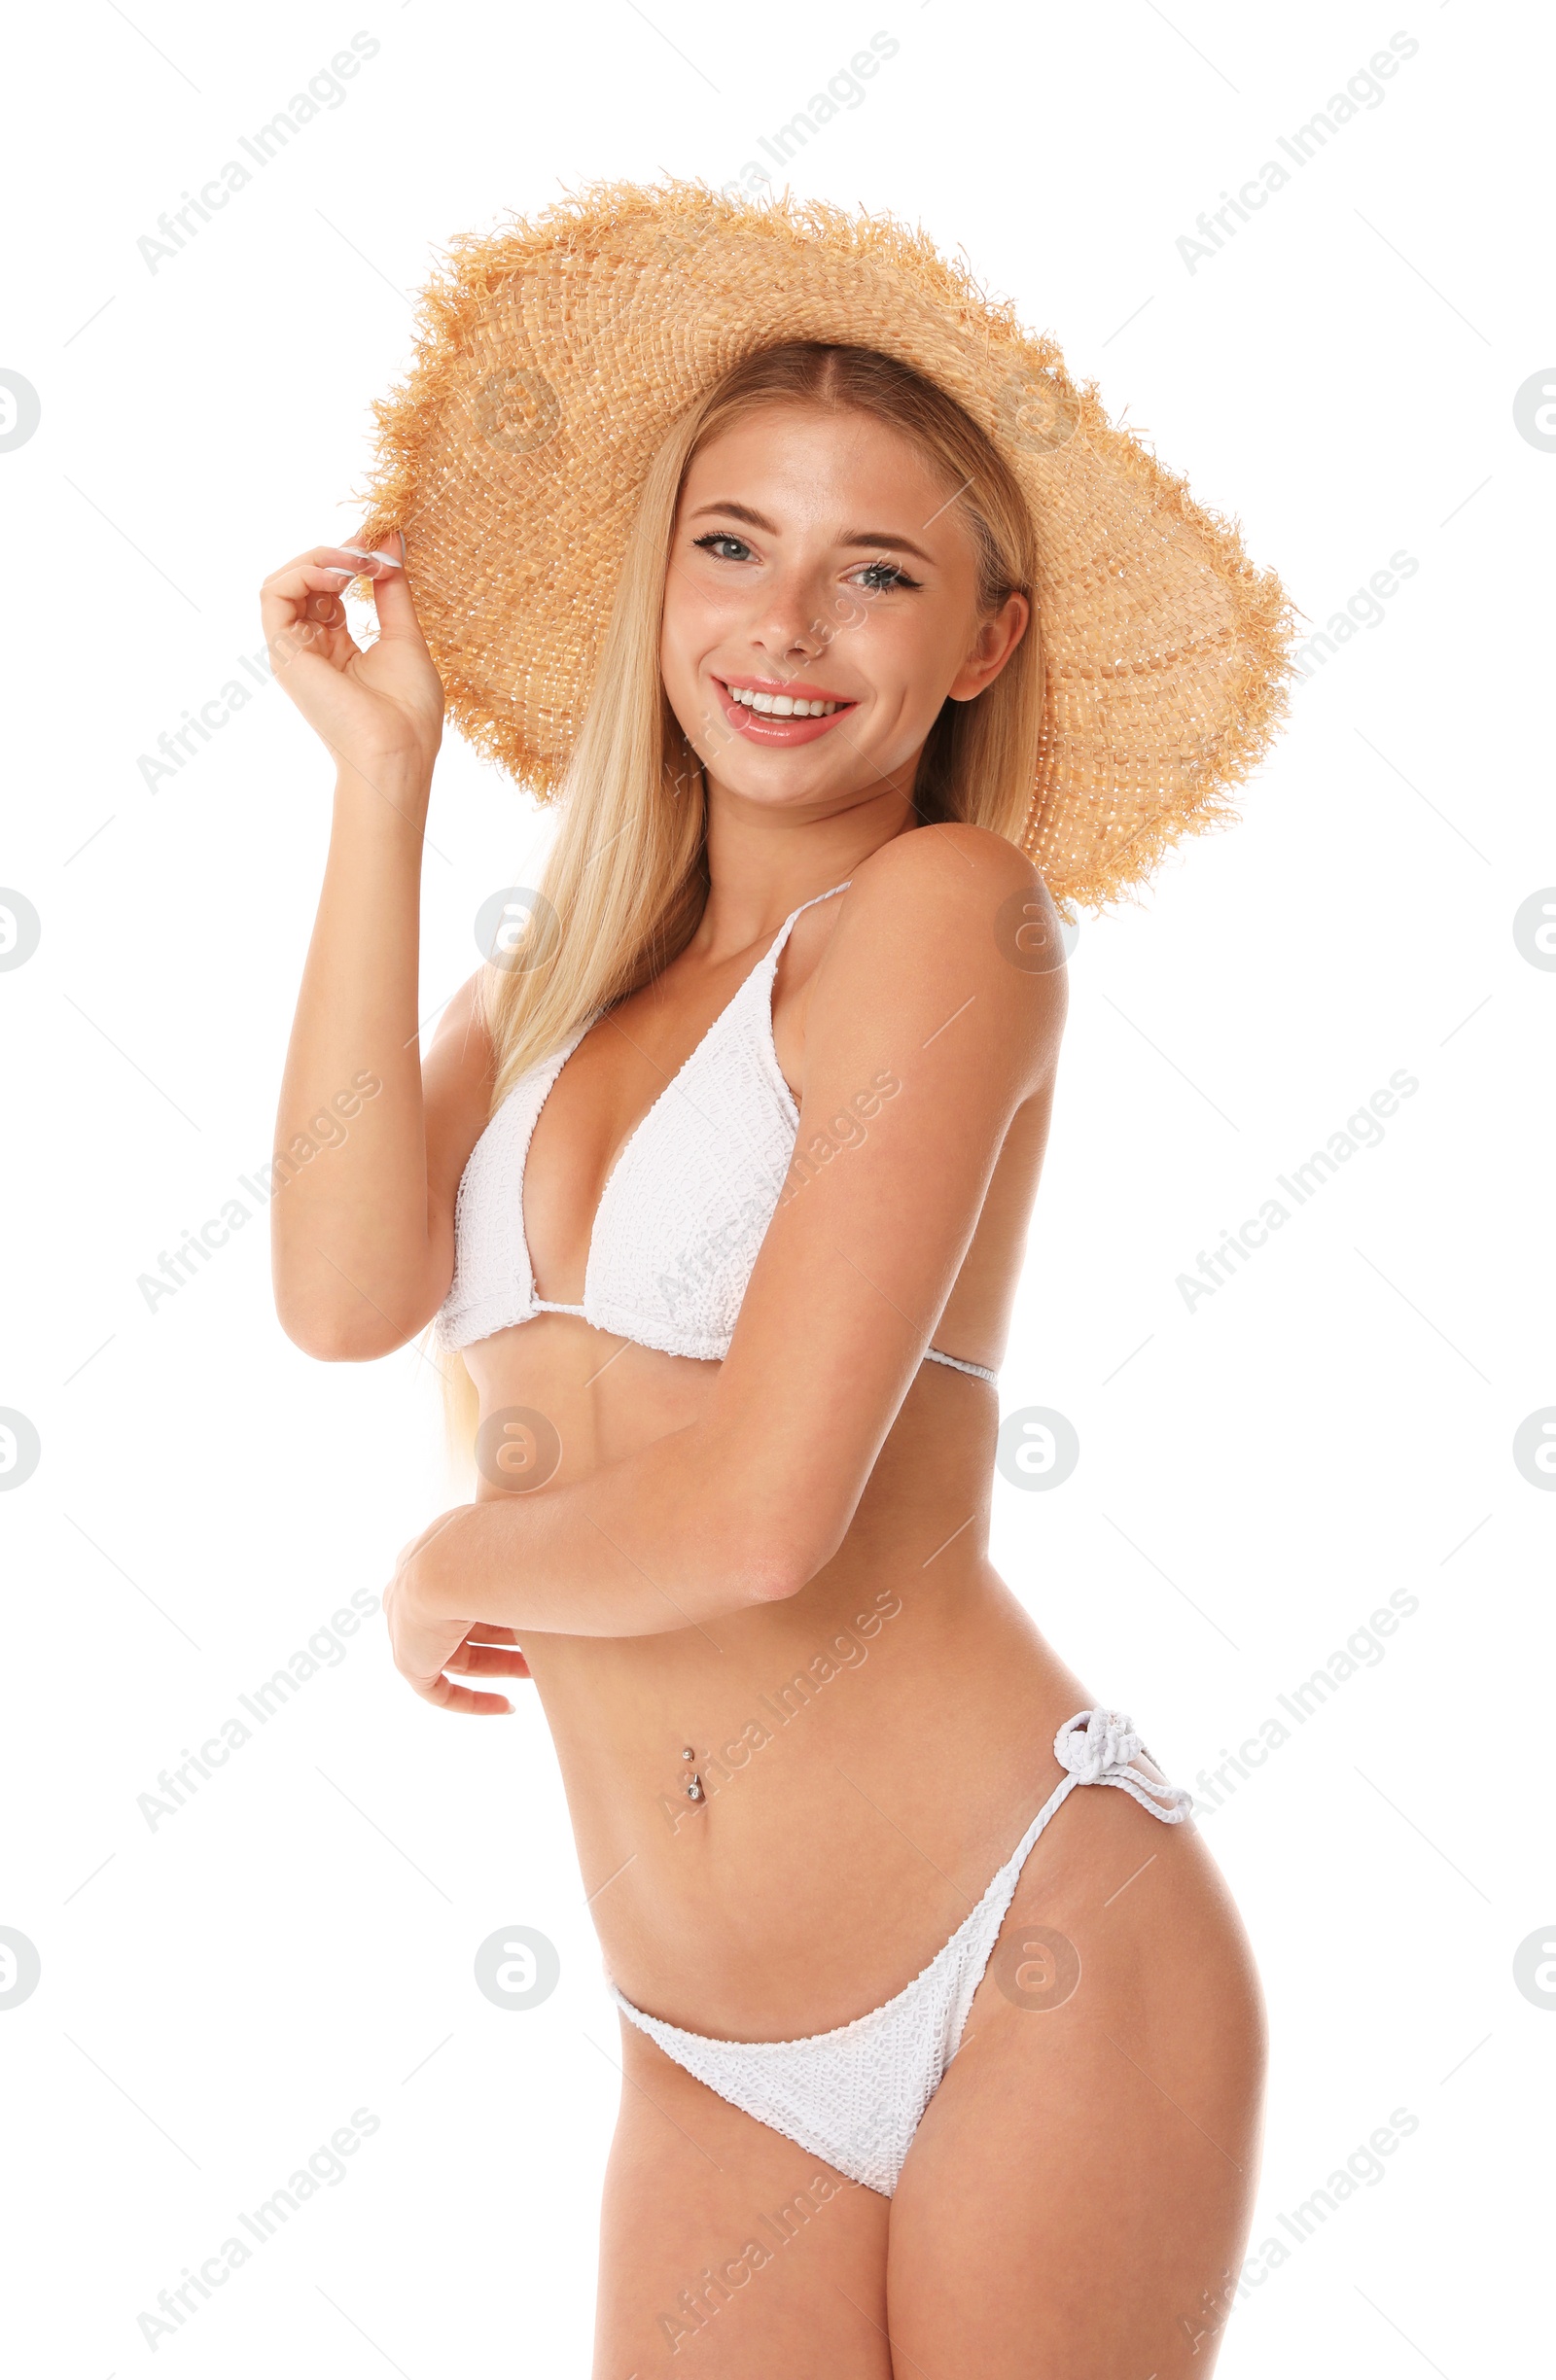 Photo of Pretty young woman wearing stylish bikini on white background